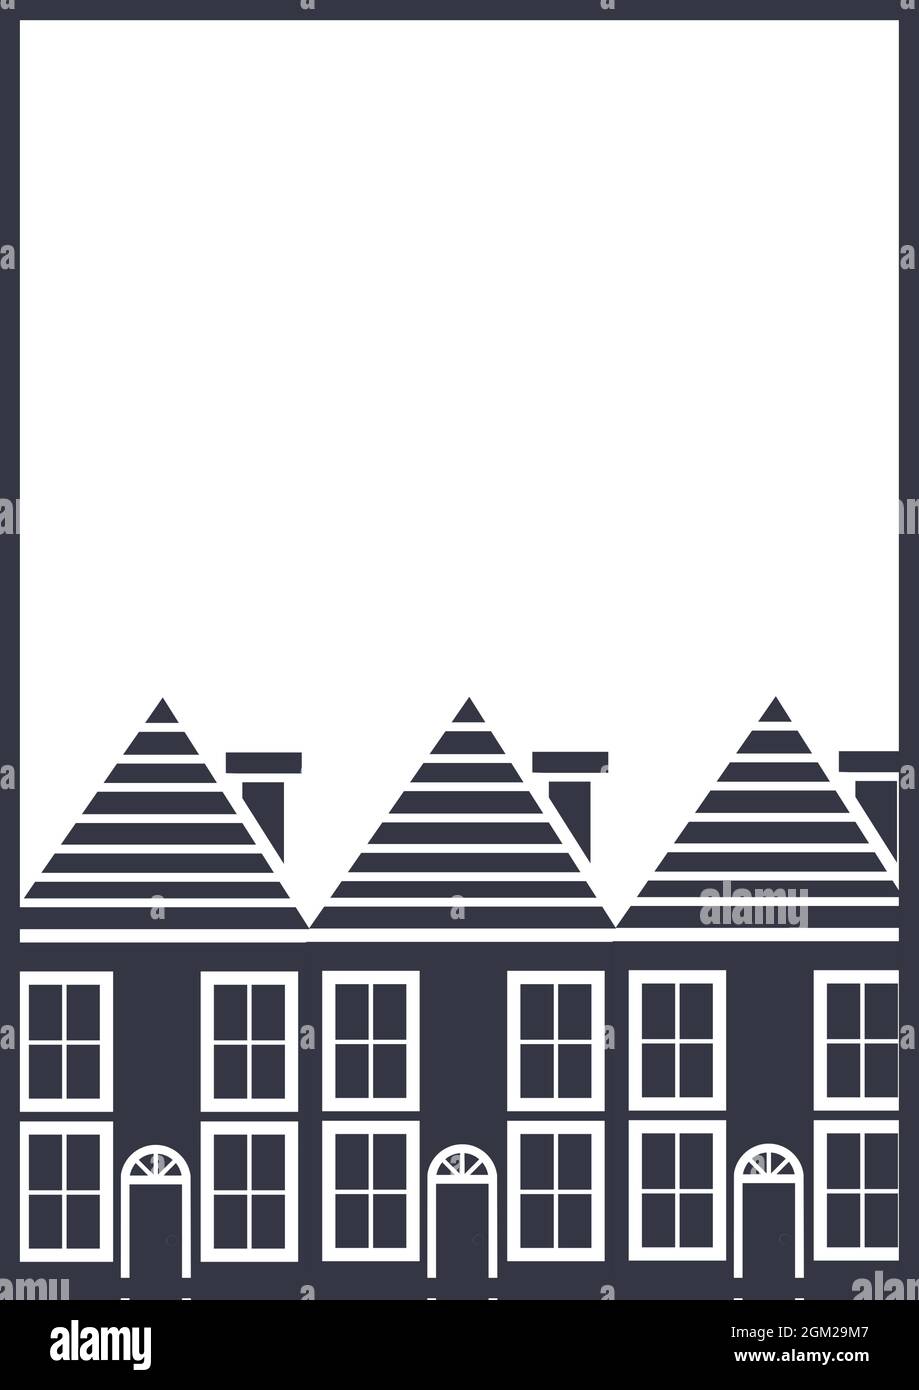 Image générée numériquement de plusieurs icônes de maison sur fond blanc Banque D'Images